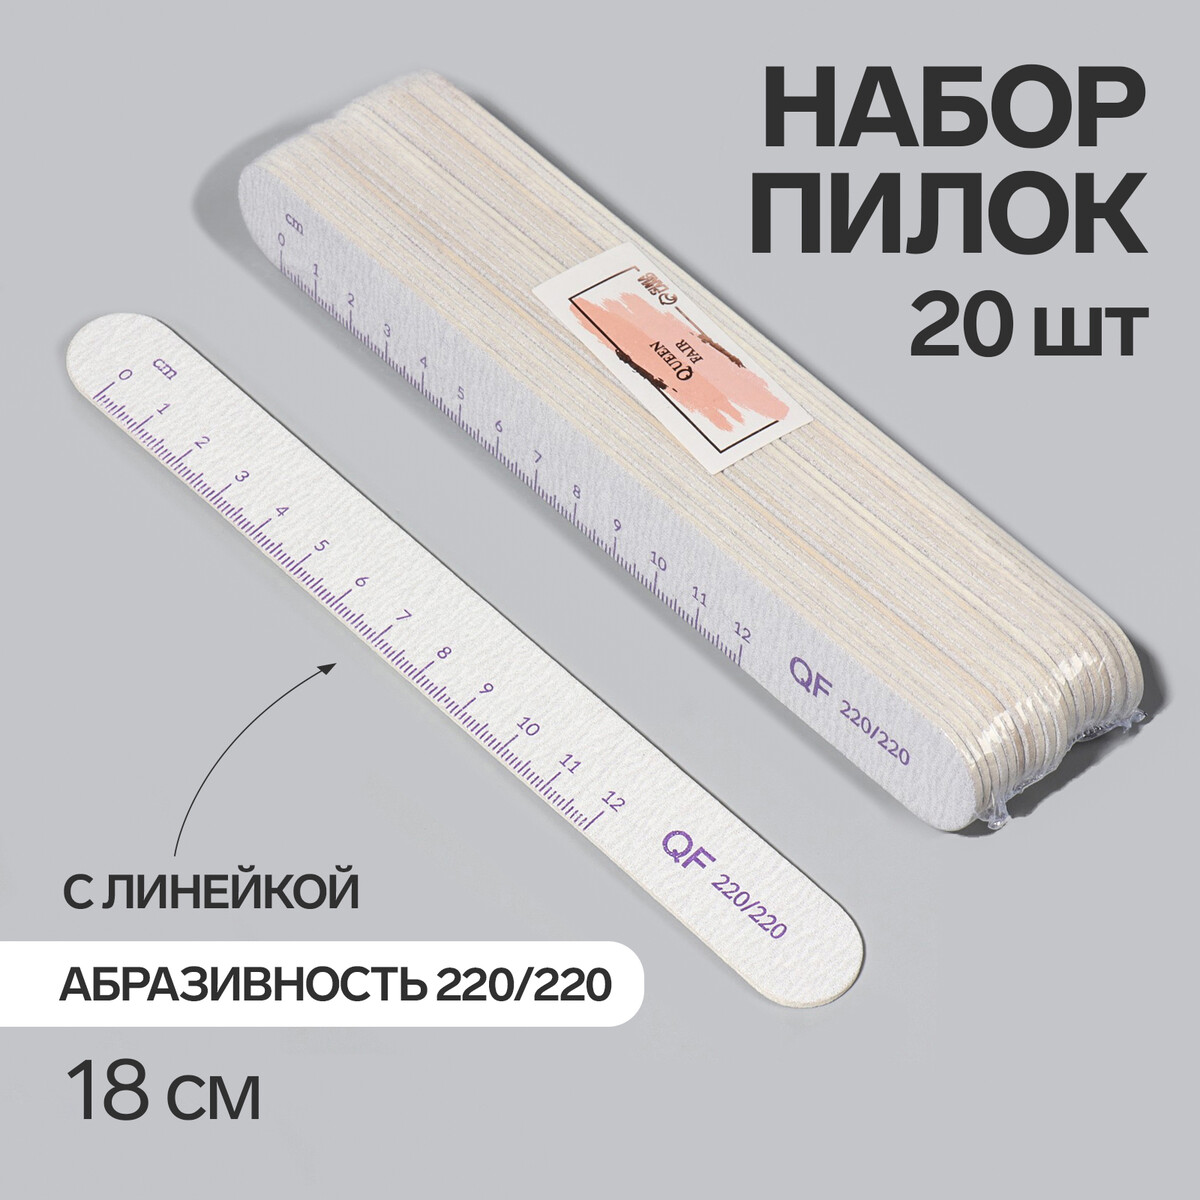 Пилка-наждак, набор 20 шт, абразивность 220, 18 см, цвет серый/фиолетовый пылесос вертикальный jimmy h8pro беспроводной фиолетовый серый